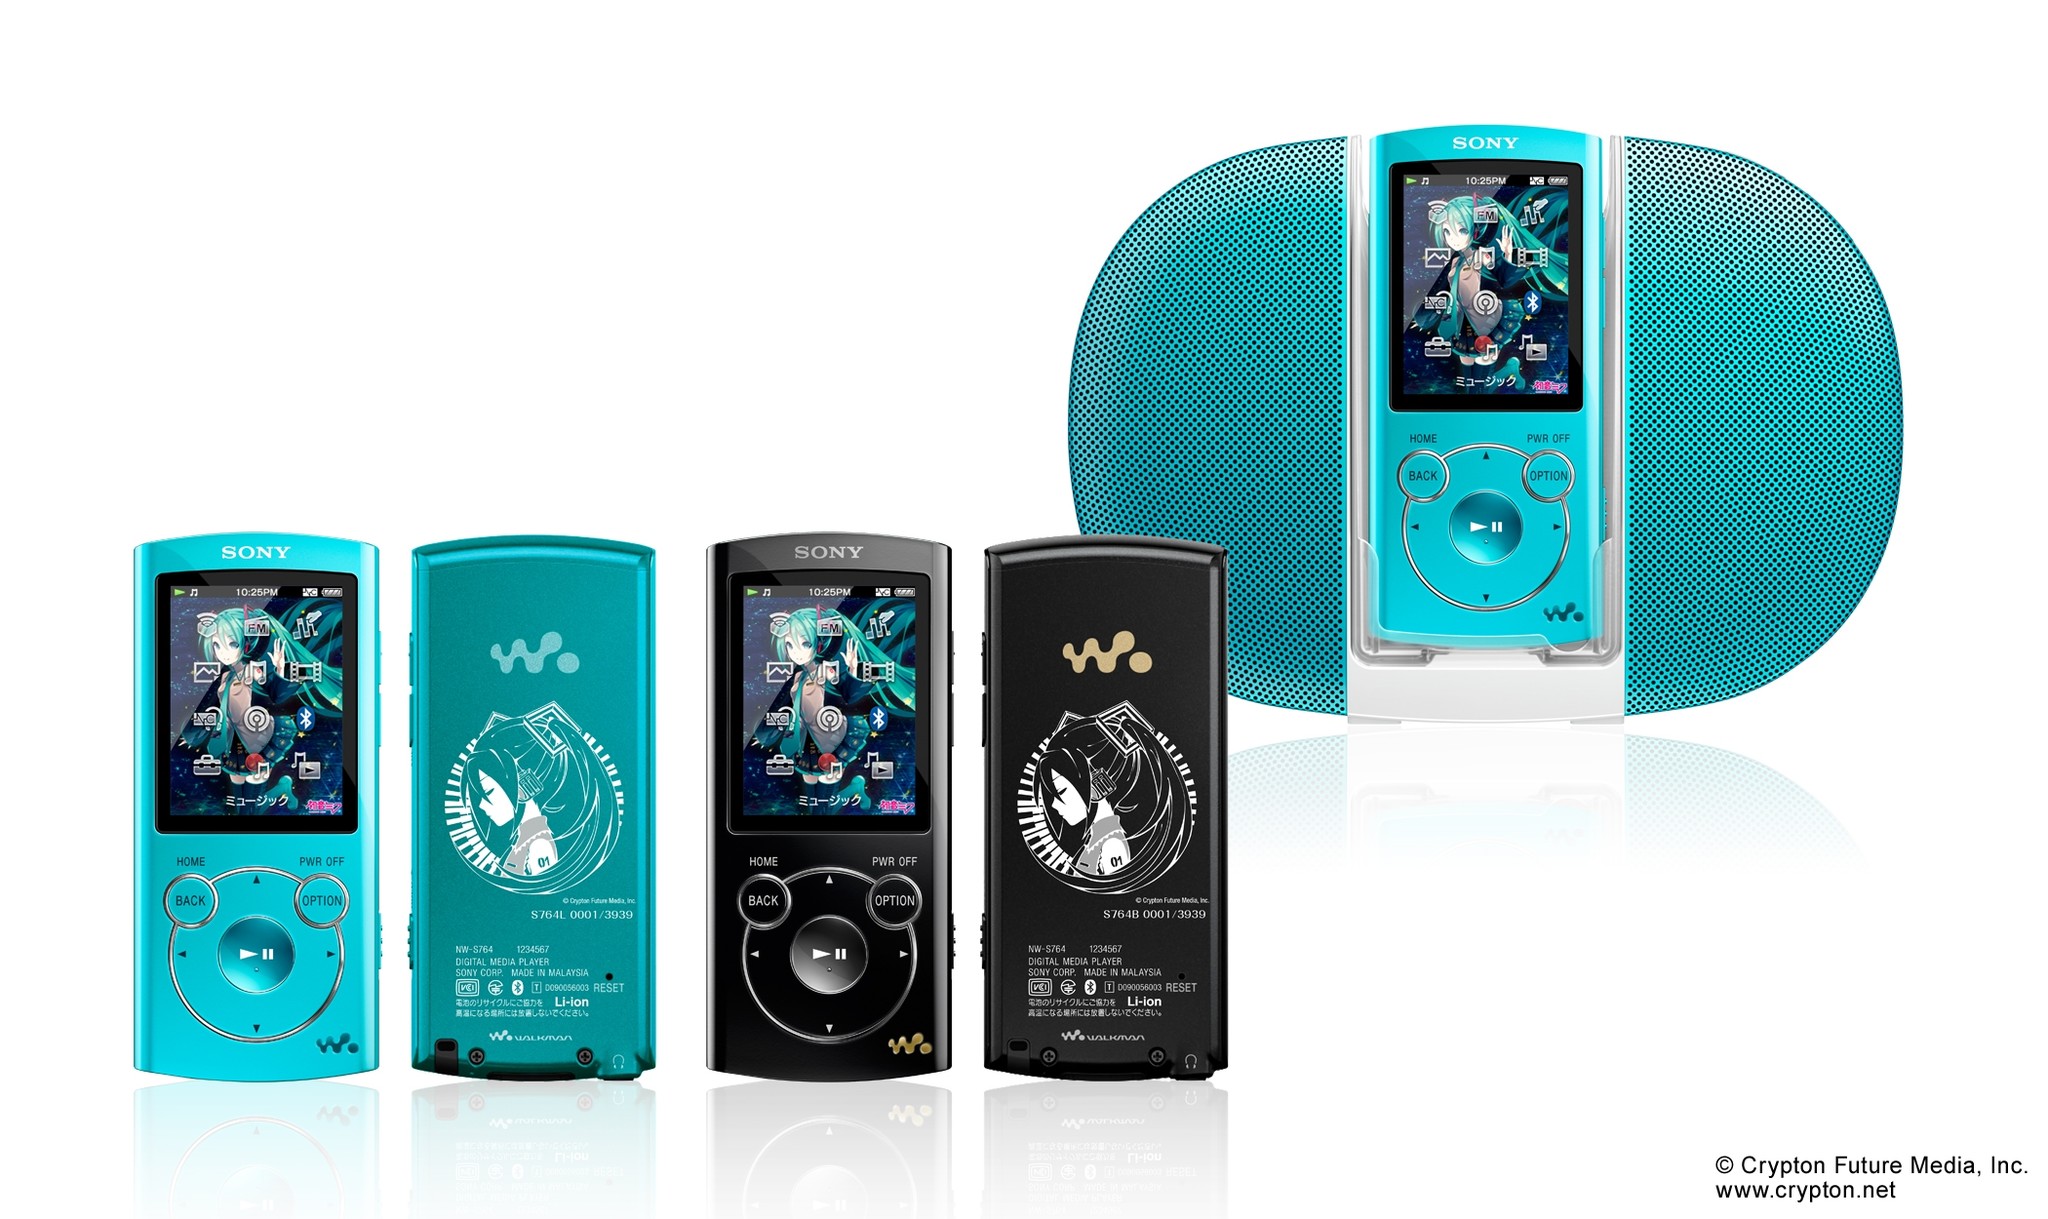 ウォークマン Sシリーズ 初音ミク生誕5周年記念モデル 限定販売決定 ソニーマーケティング株式会社のプレスリリース